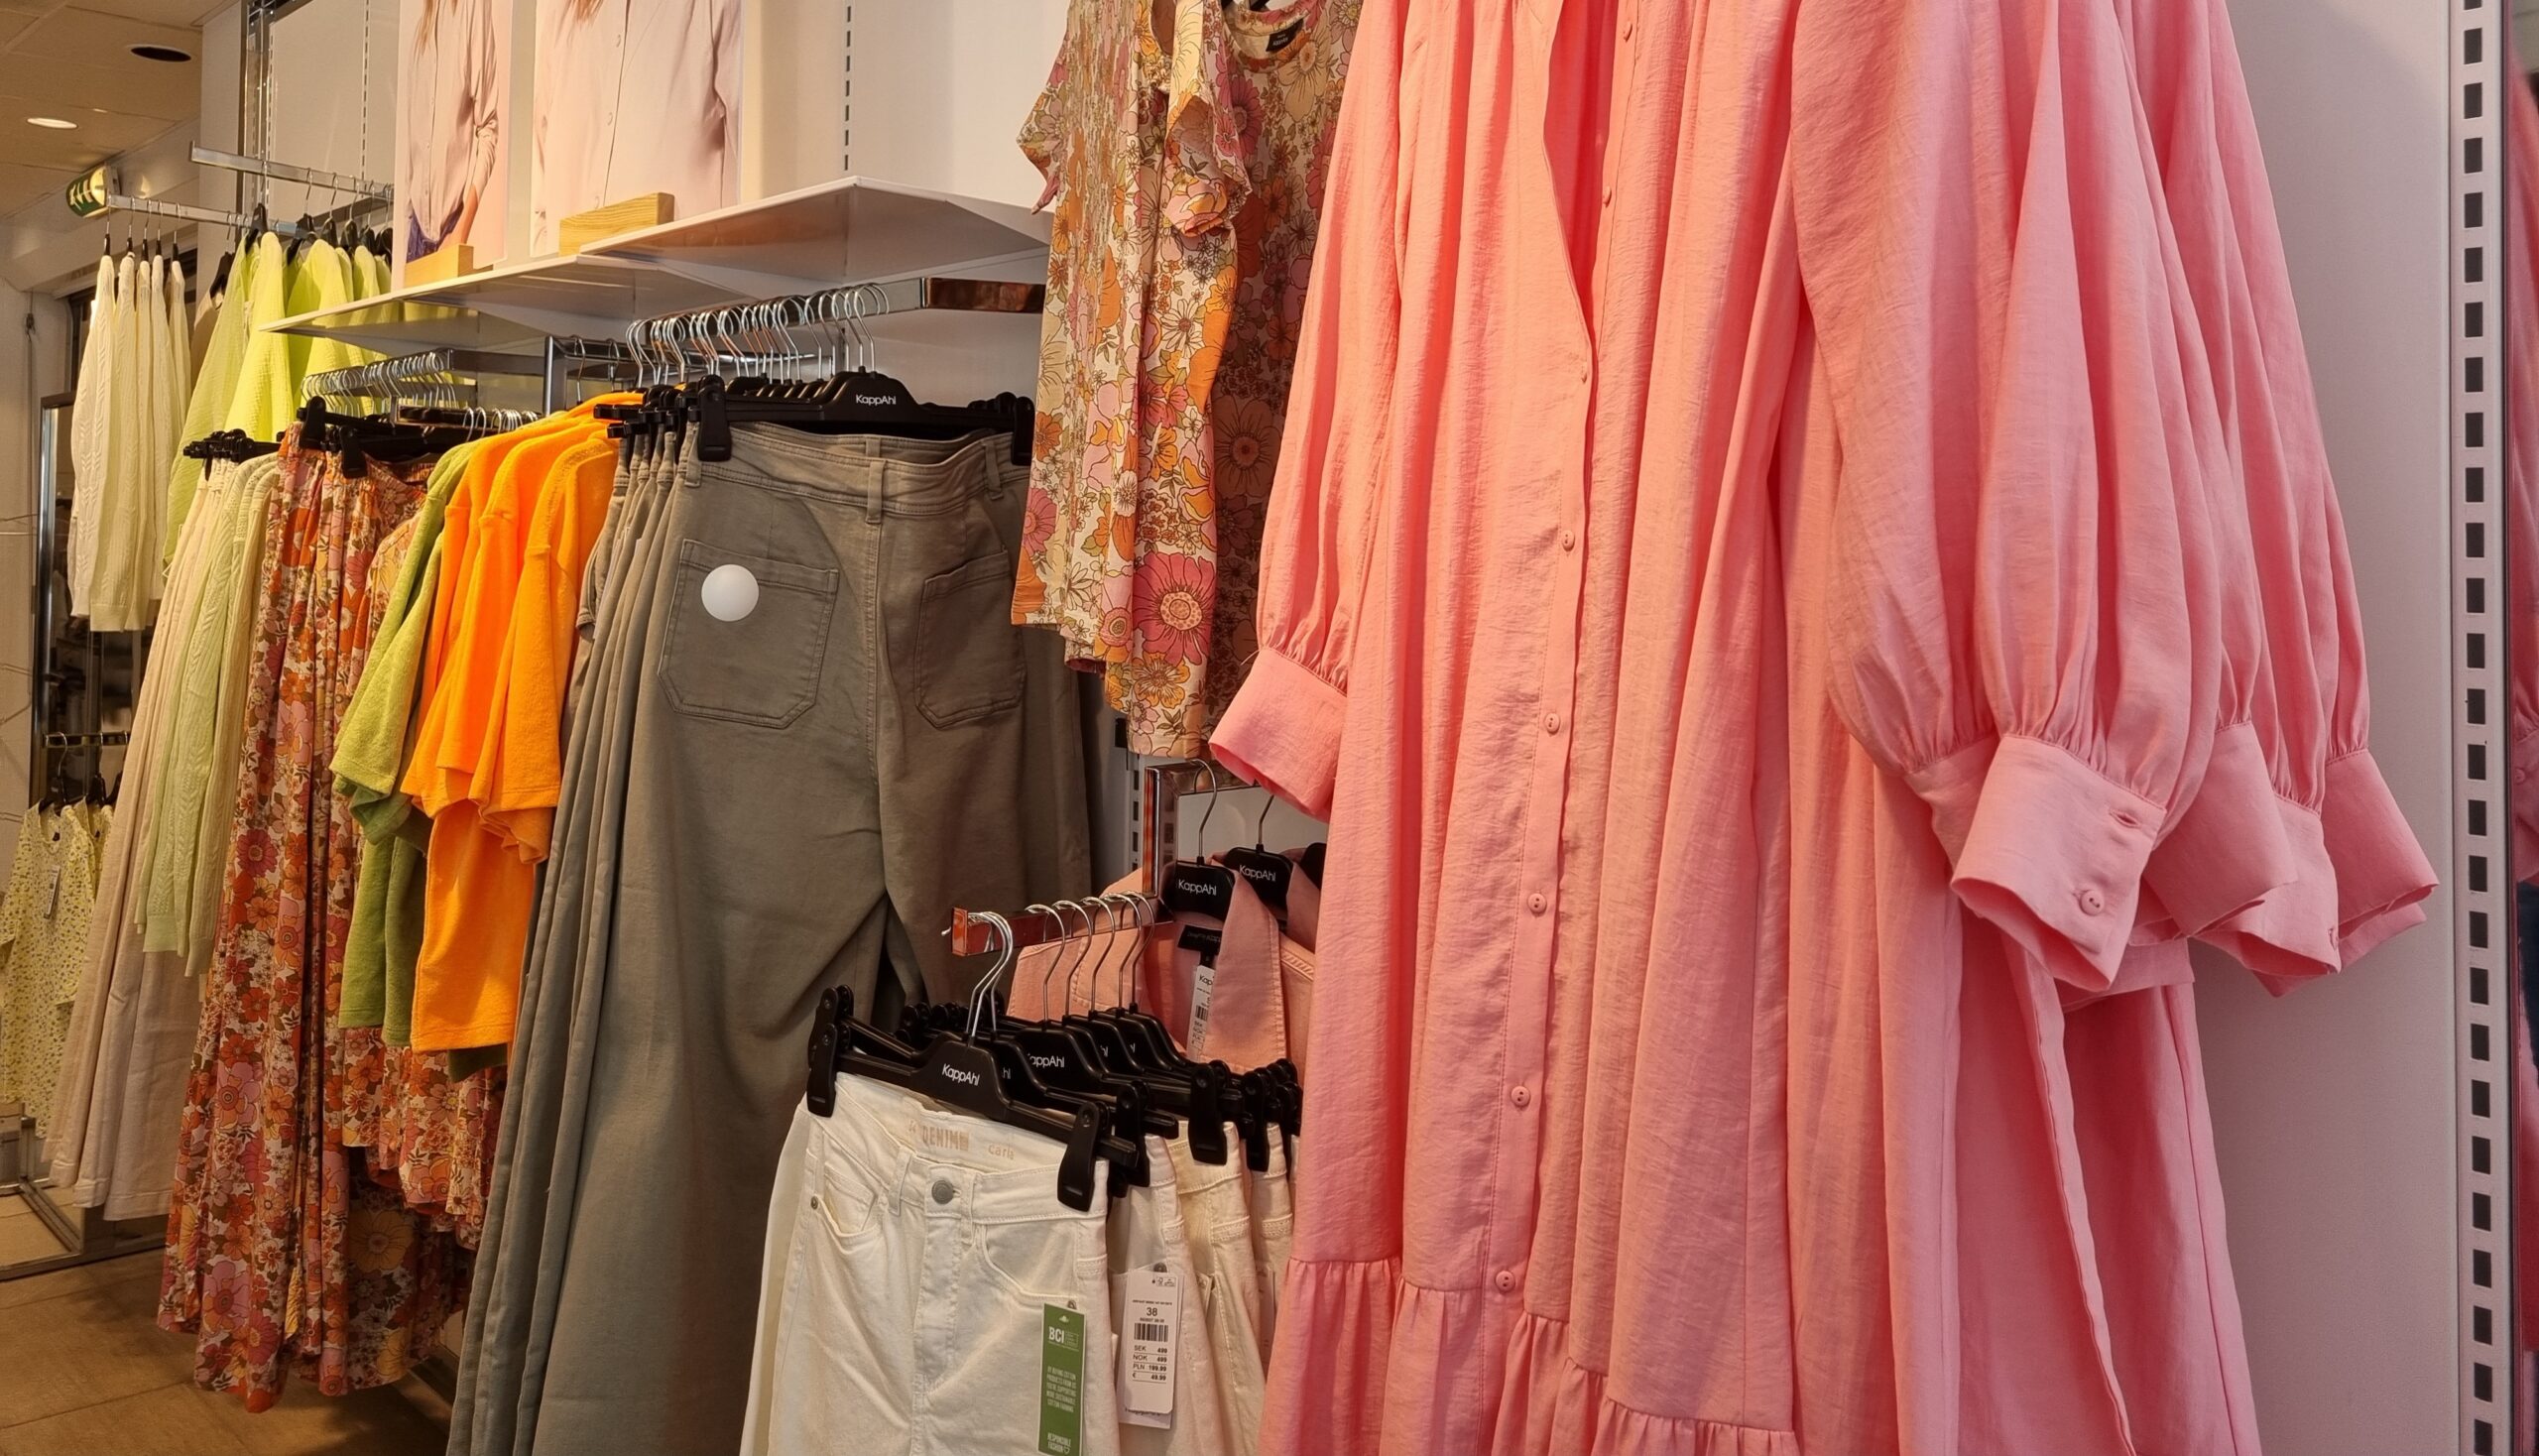 Stora skjortor, kavajer och vida byxben i knalliga färger hänger i butiken